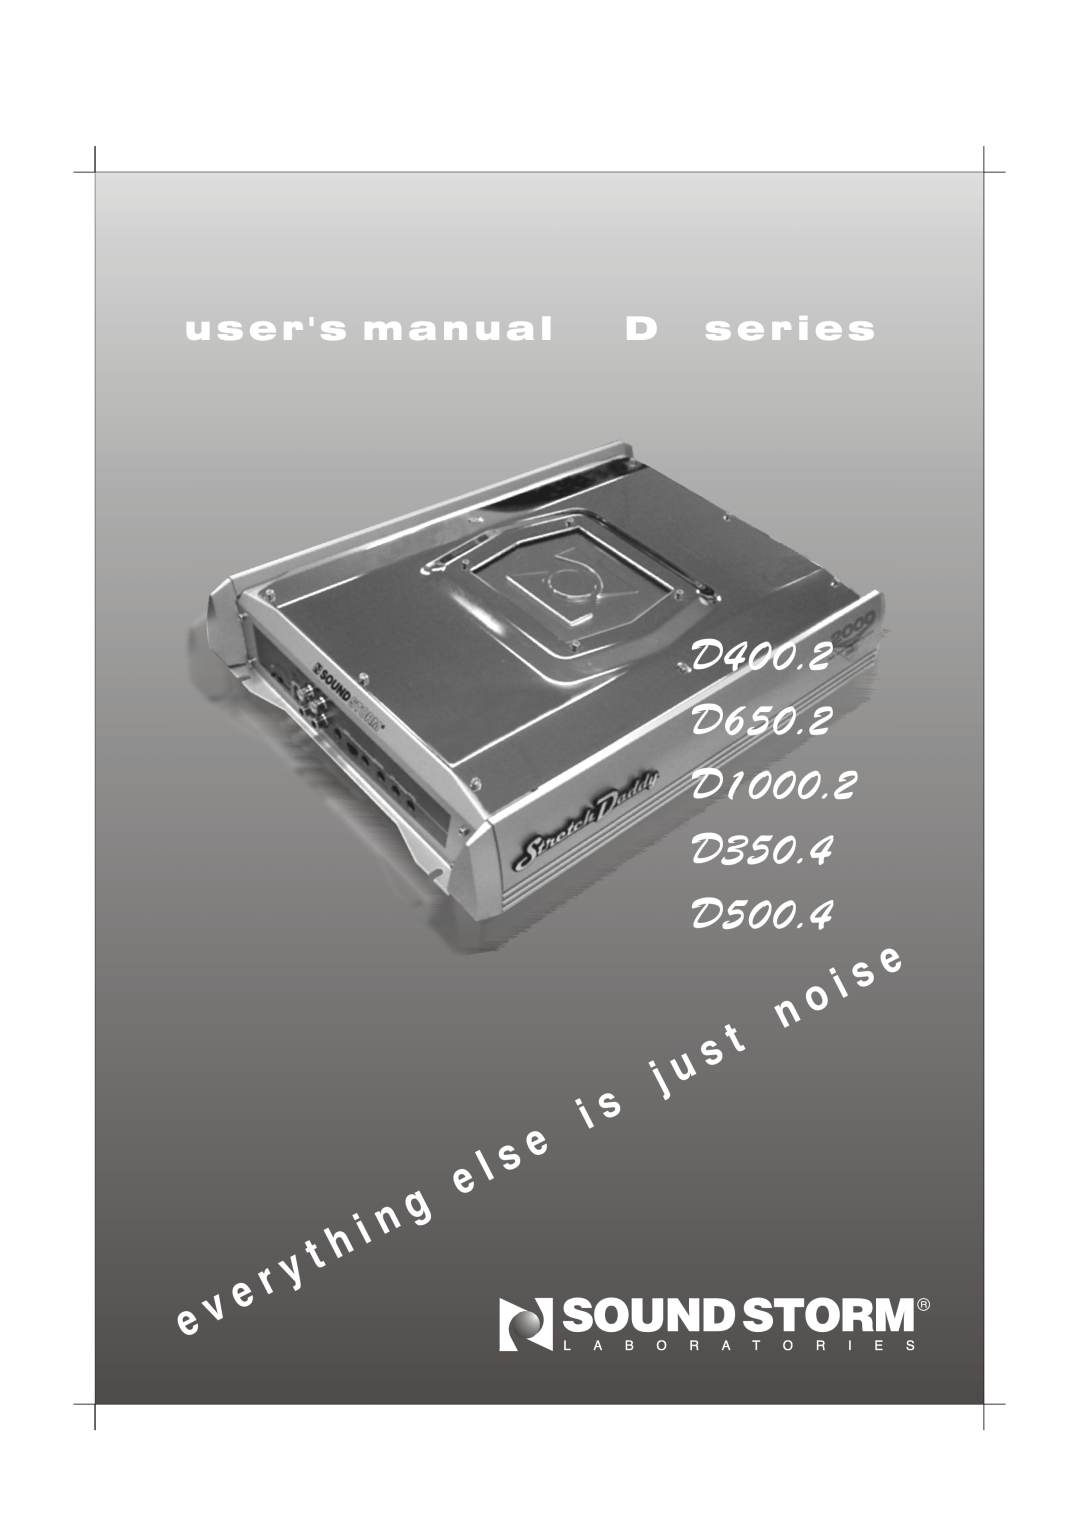 Sound Storm Laboratories user manual D400.2 D650.2 D1000.2 D350.4 D500.4, u s er s manual D series 